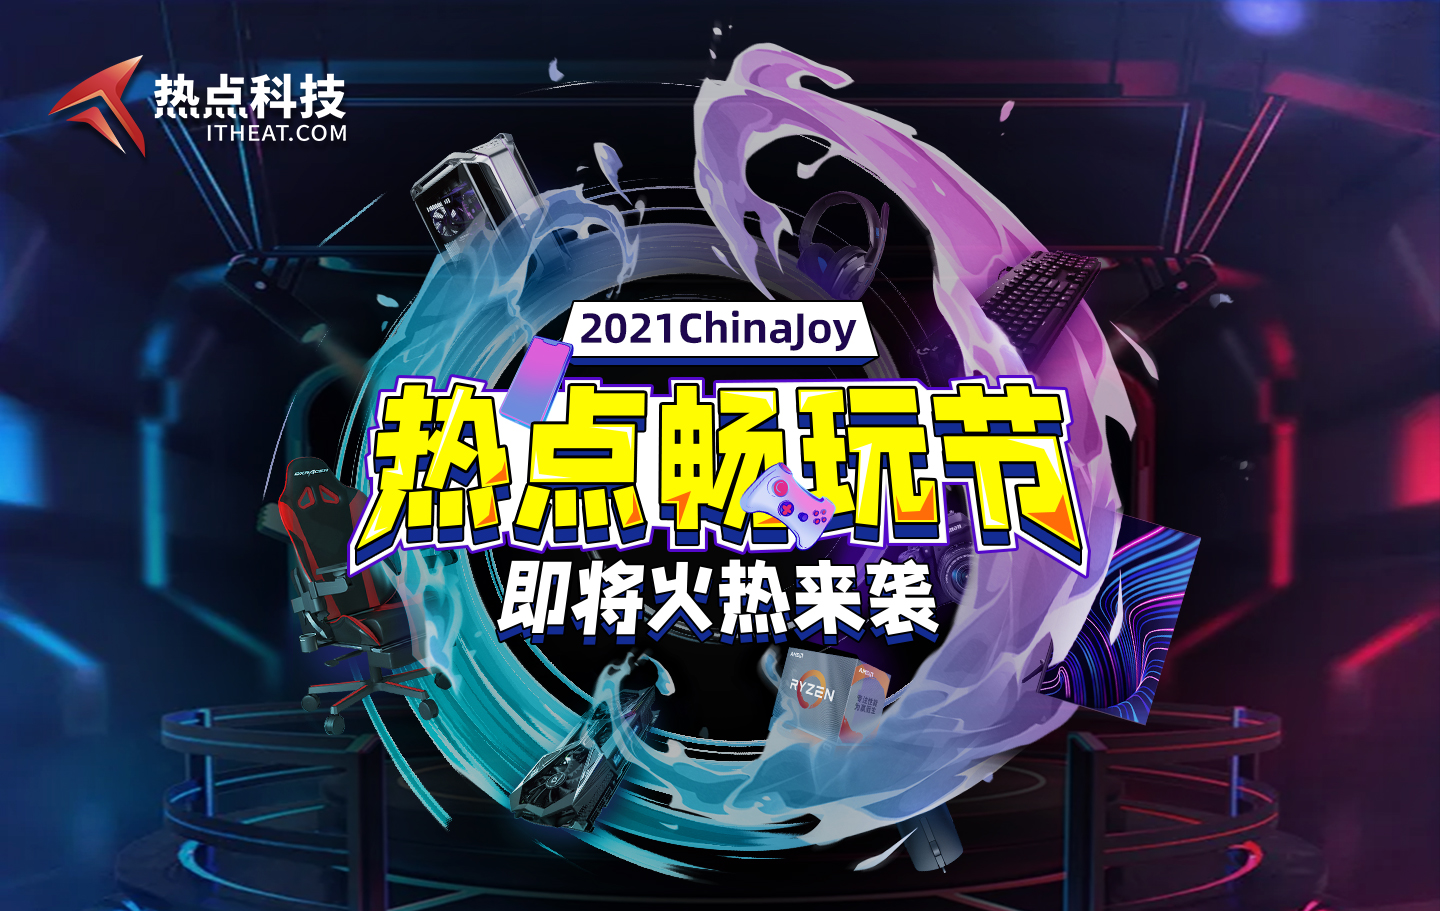 打造科技数码爱好者的乌托邦 热点科技参展2021ChinaJoy